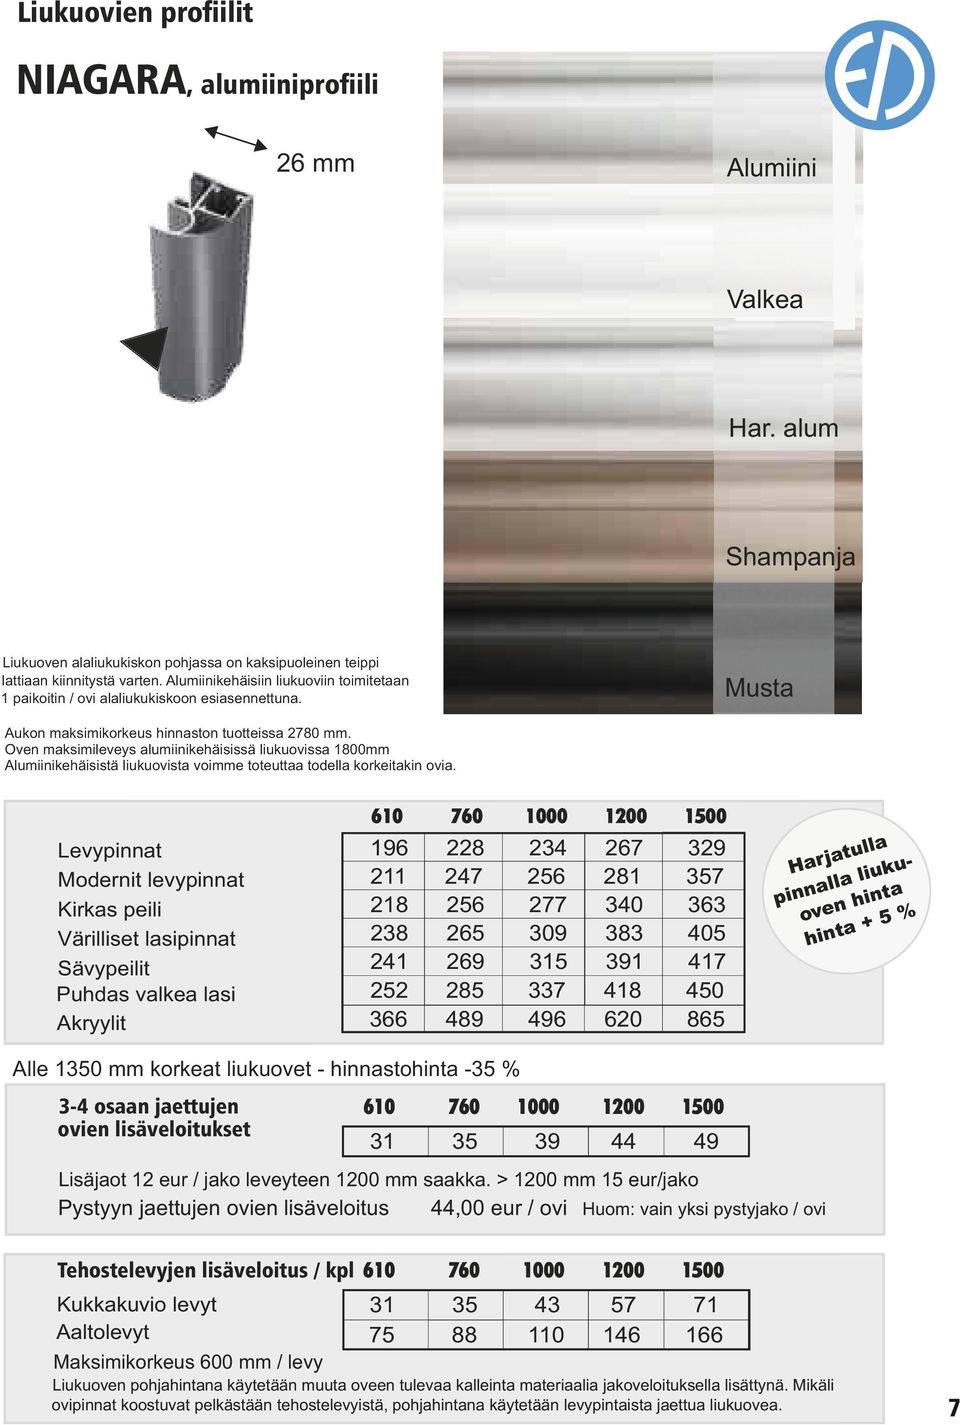 Oven maksimileveys alumiinikehäisissä liukuovissa 1800mm Alumiinikehäisistä liukuovista voimme toteuttaa todella korkeitakin ovia.